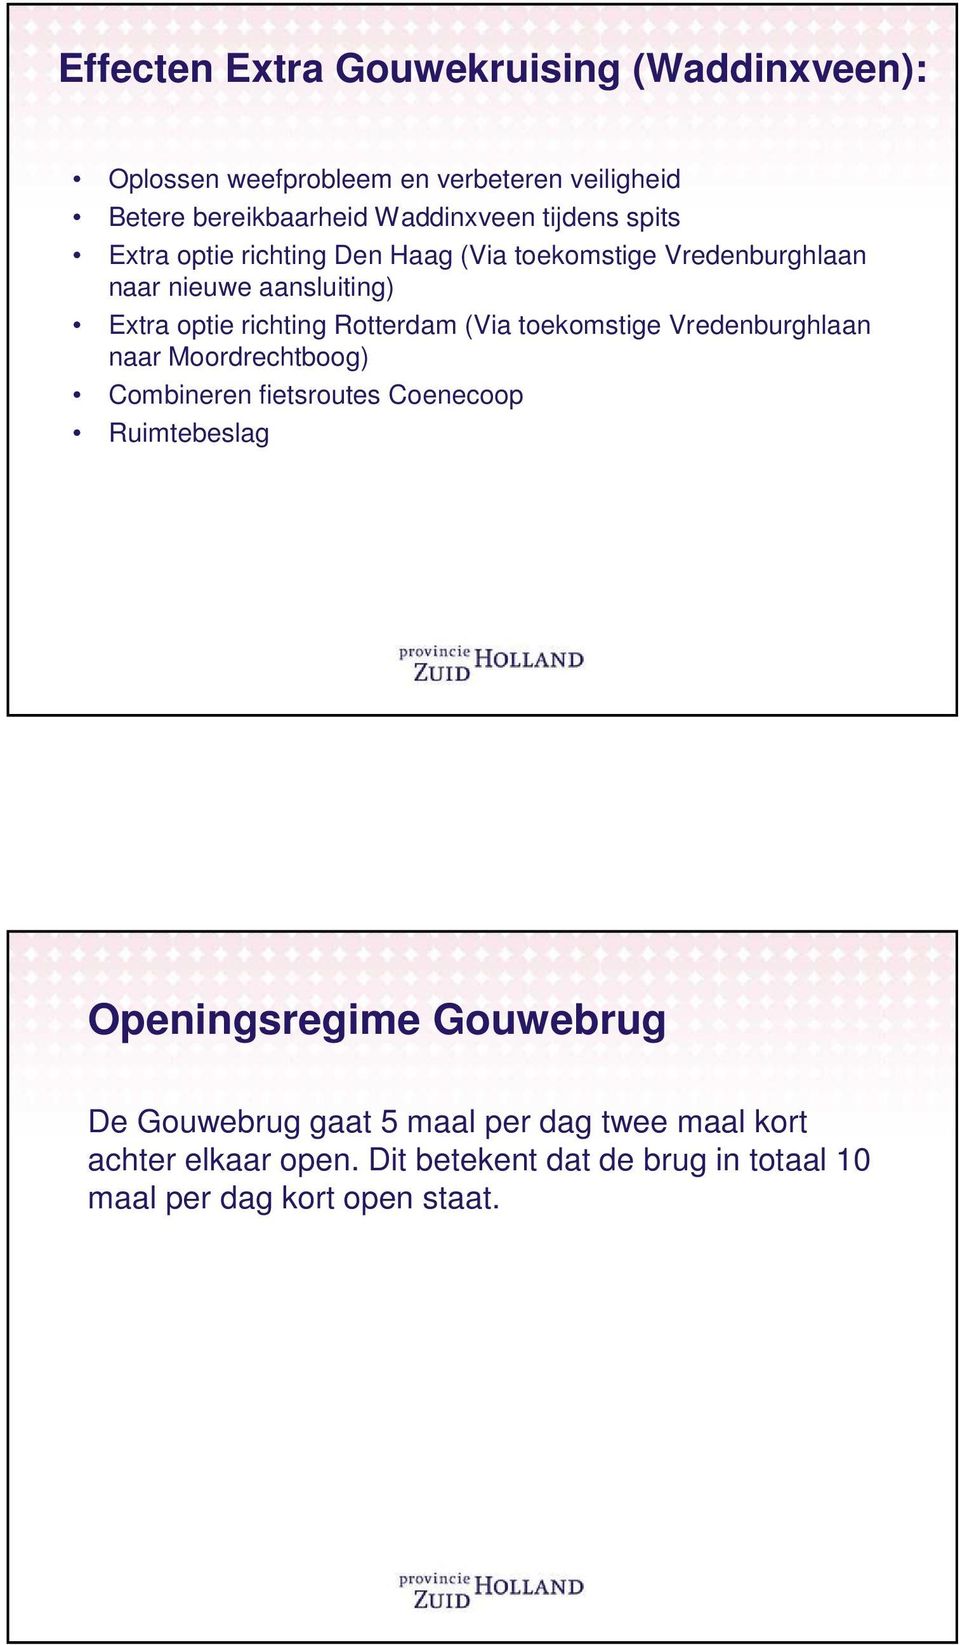 Rotterdam (Via toekomstige Vredenburghlaan naar Moordrechtboog) Combineren fietsroutes Coenecoop Ruimtebeslag Openingsregime